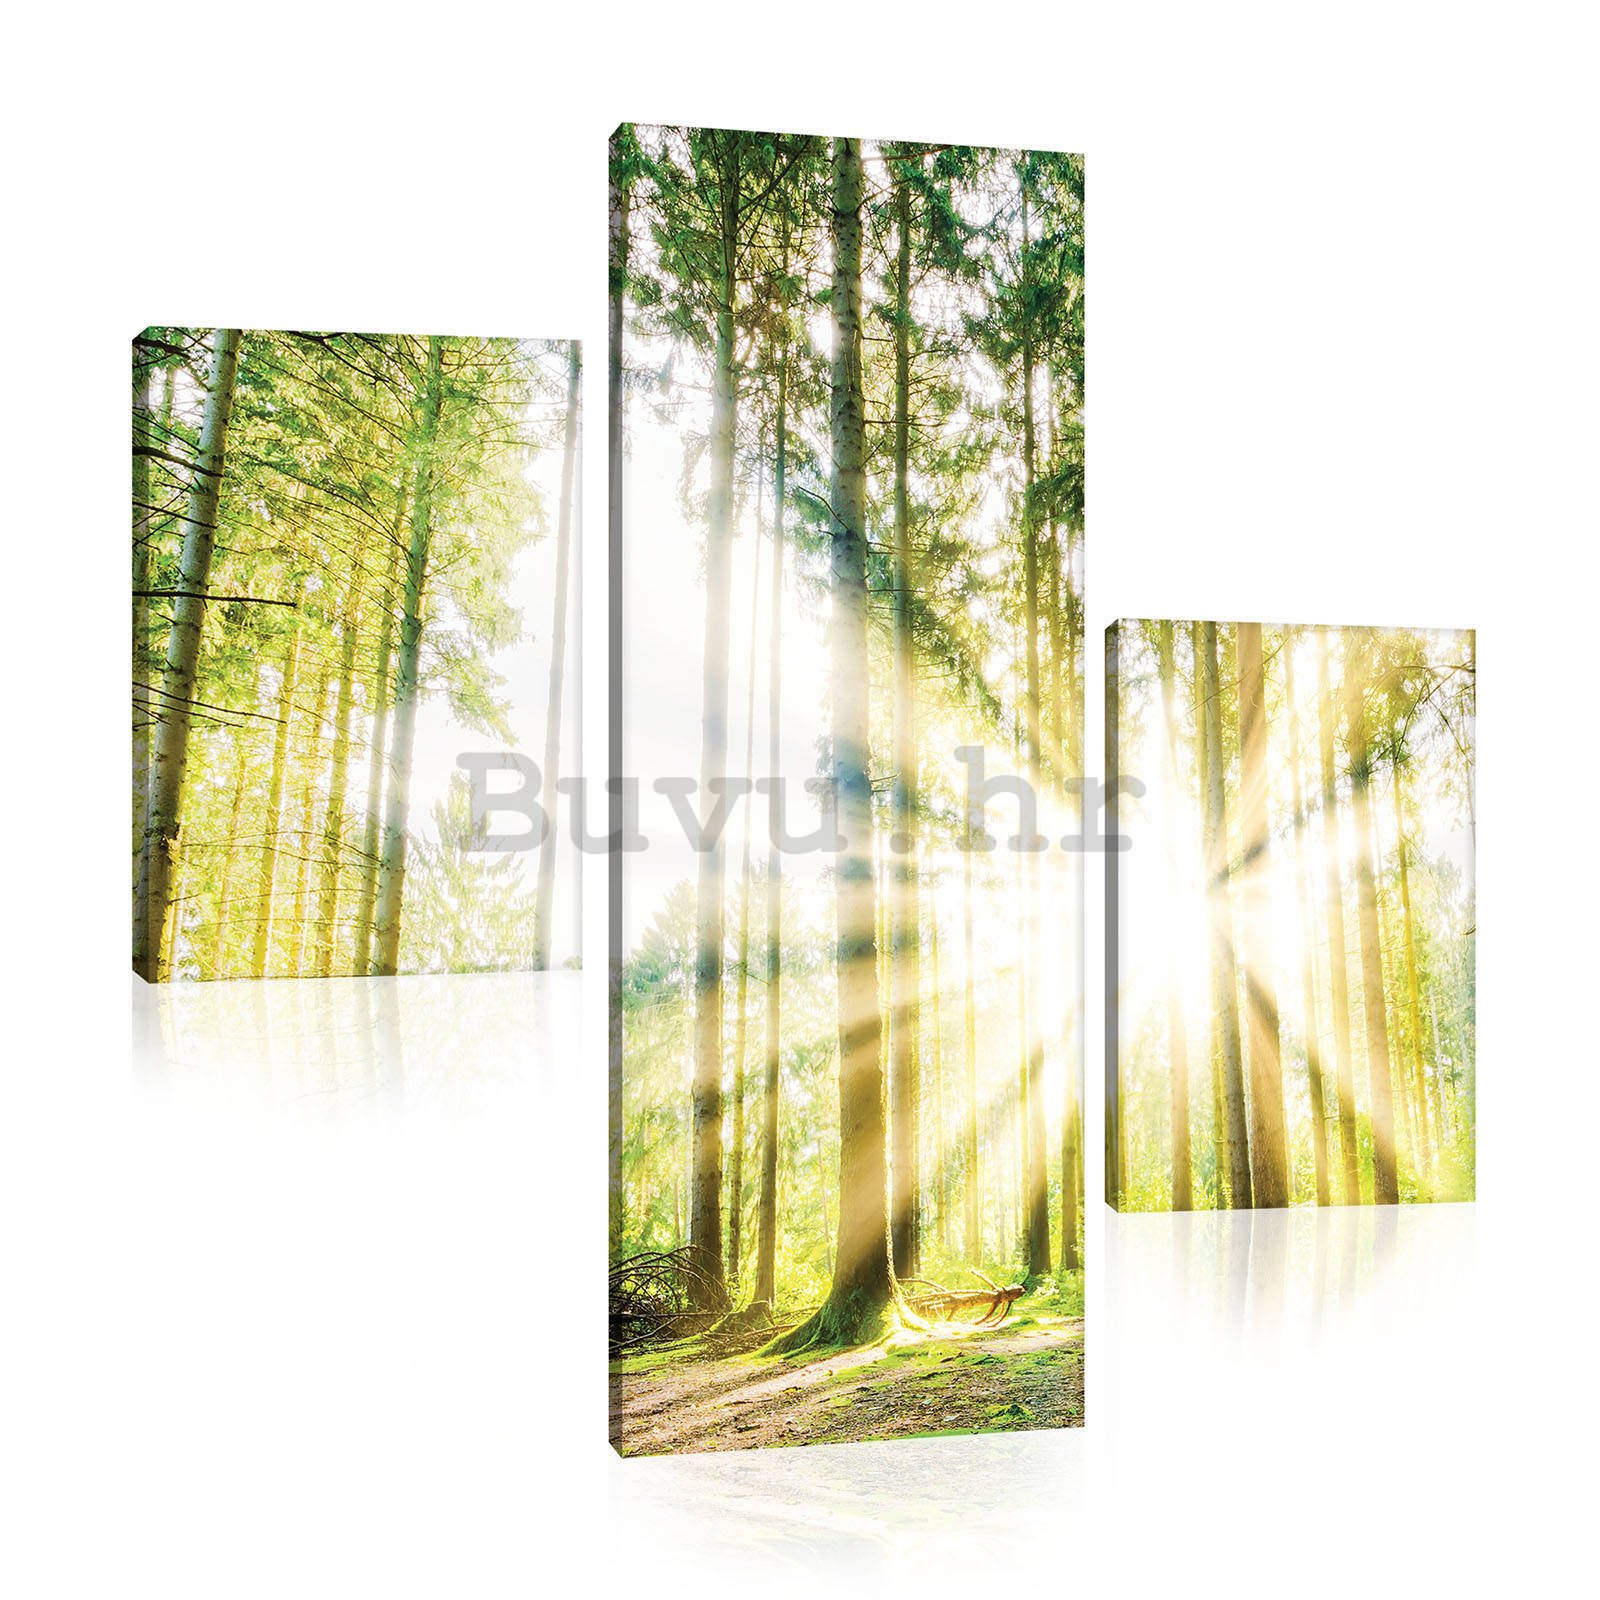 Slika na platnu: Sunce u šumi (2) - set 1kom 80x30 cm i 2kom 37,5x24,8 cm 